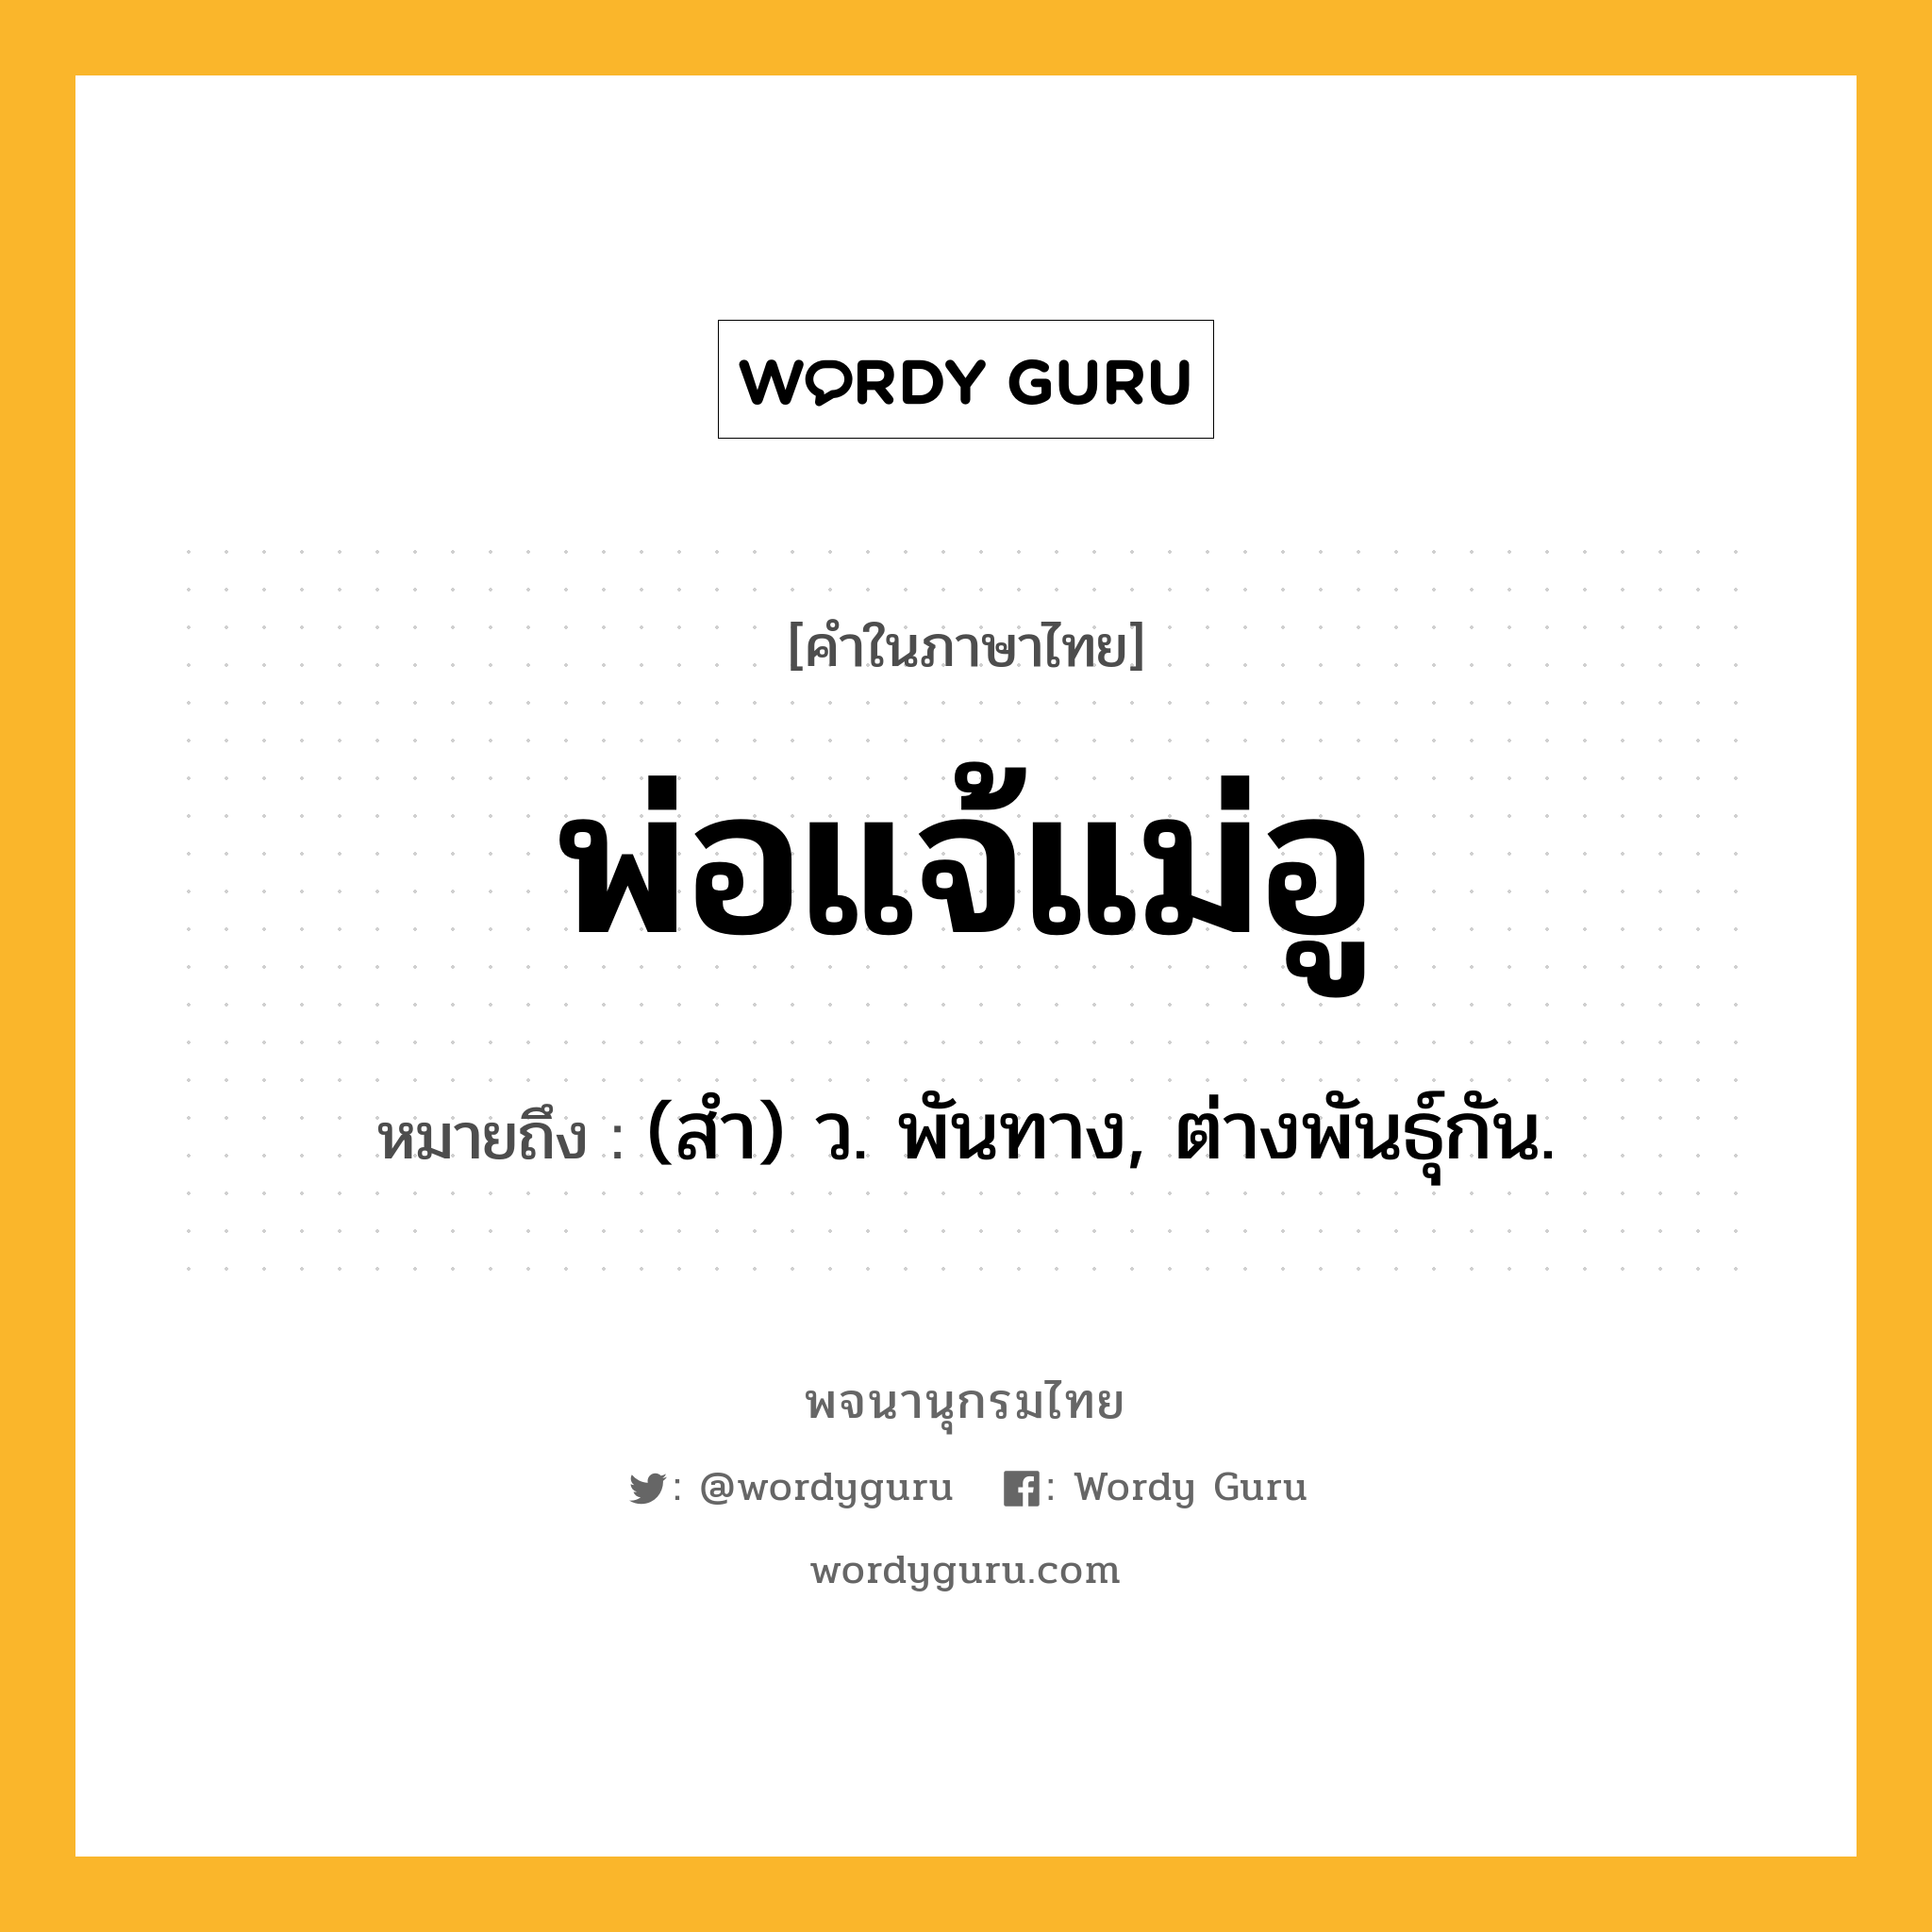 พ่อแจ้แม่อู ความหมาย หมายถึงอะไร?, คำในภาษาไทย พ่อแจ้แม่อู หมายถึง (สํา) ว. พันทาง, ต่างพันธุ์กัน.